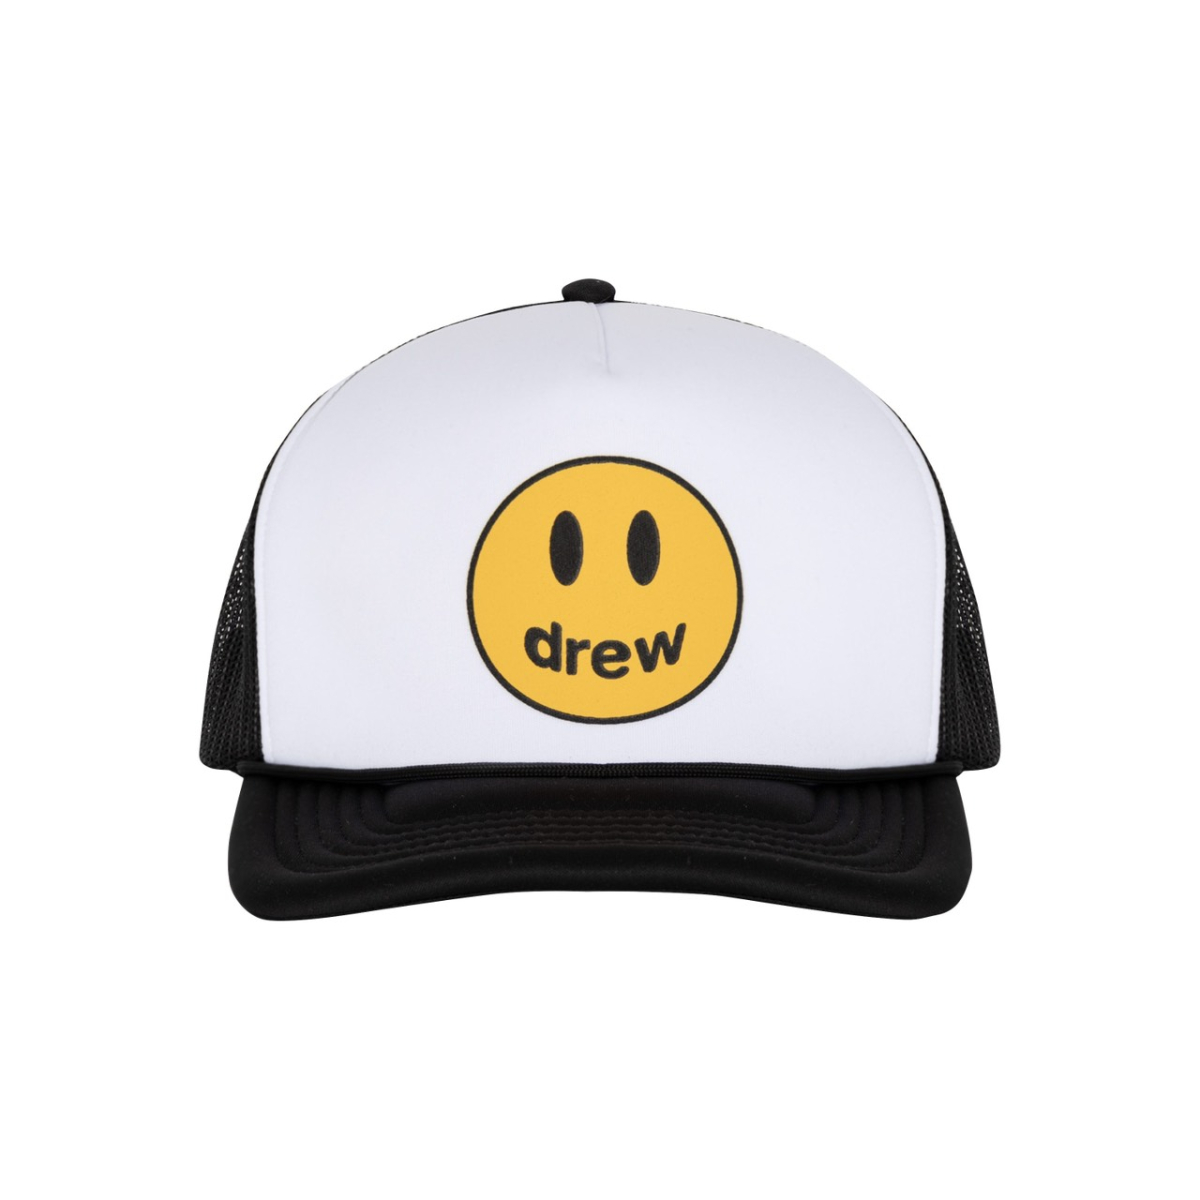 Drew House Mascot Trucker Hat White-Black